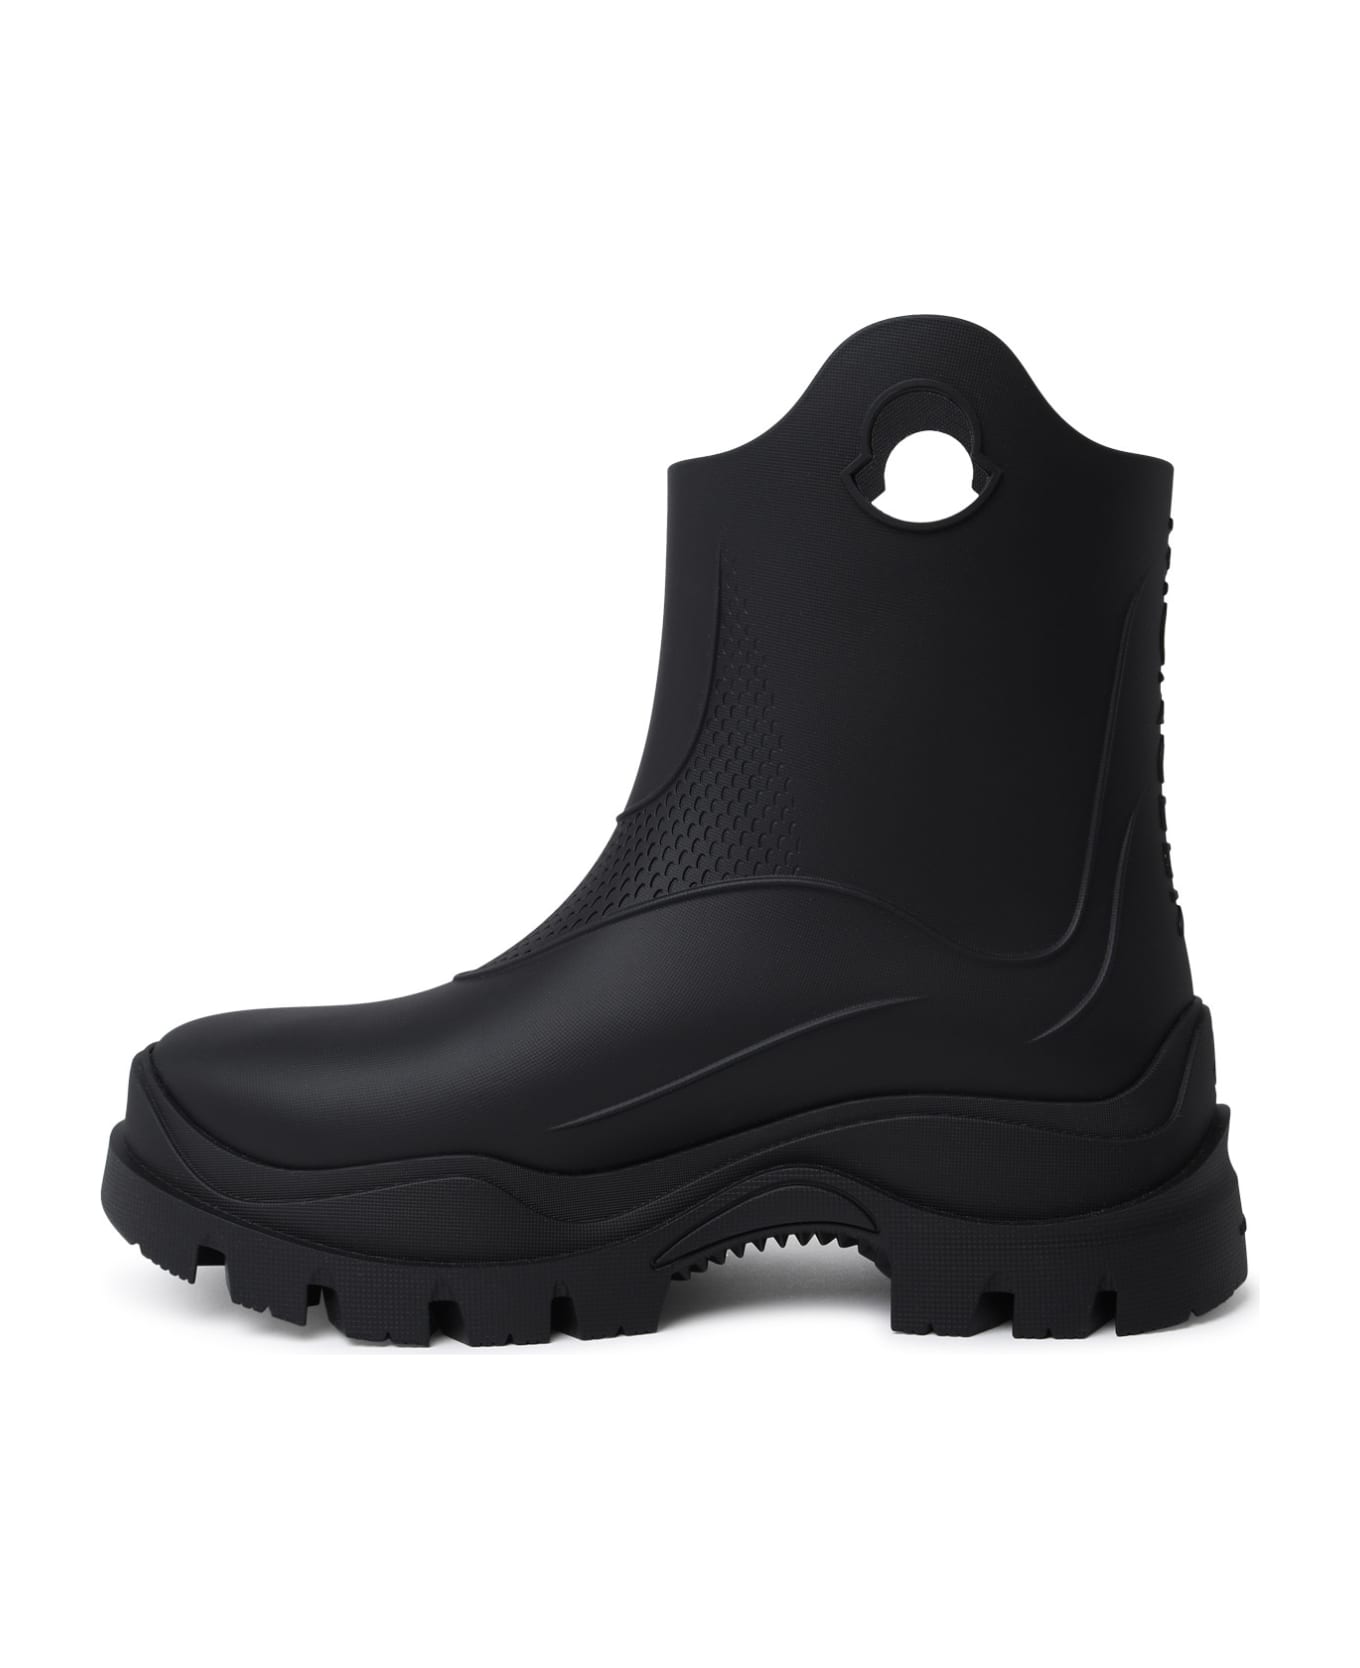 Moncler 'misty' Black Pvc Rain Boots - black